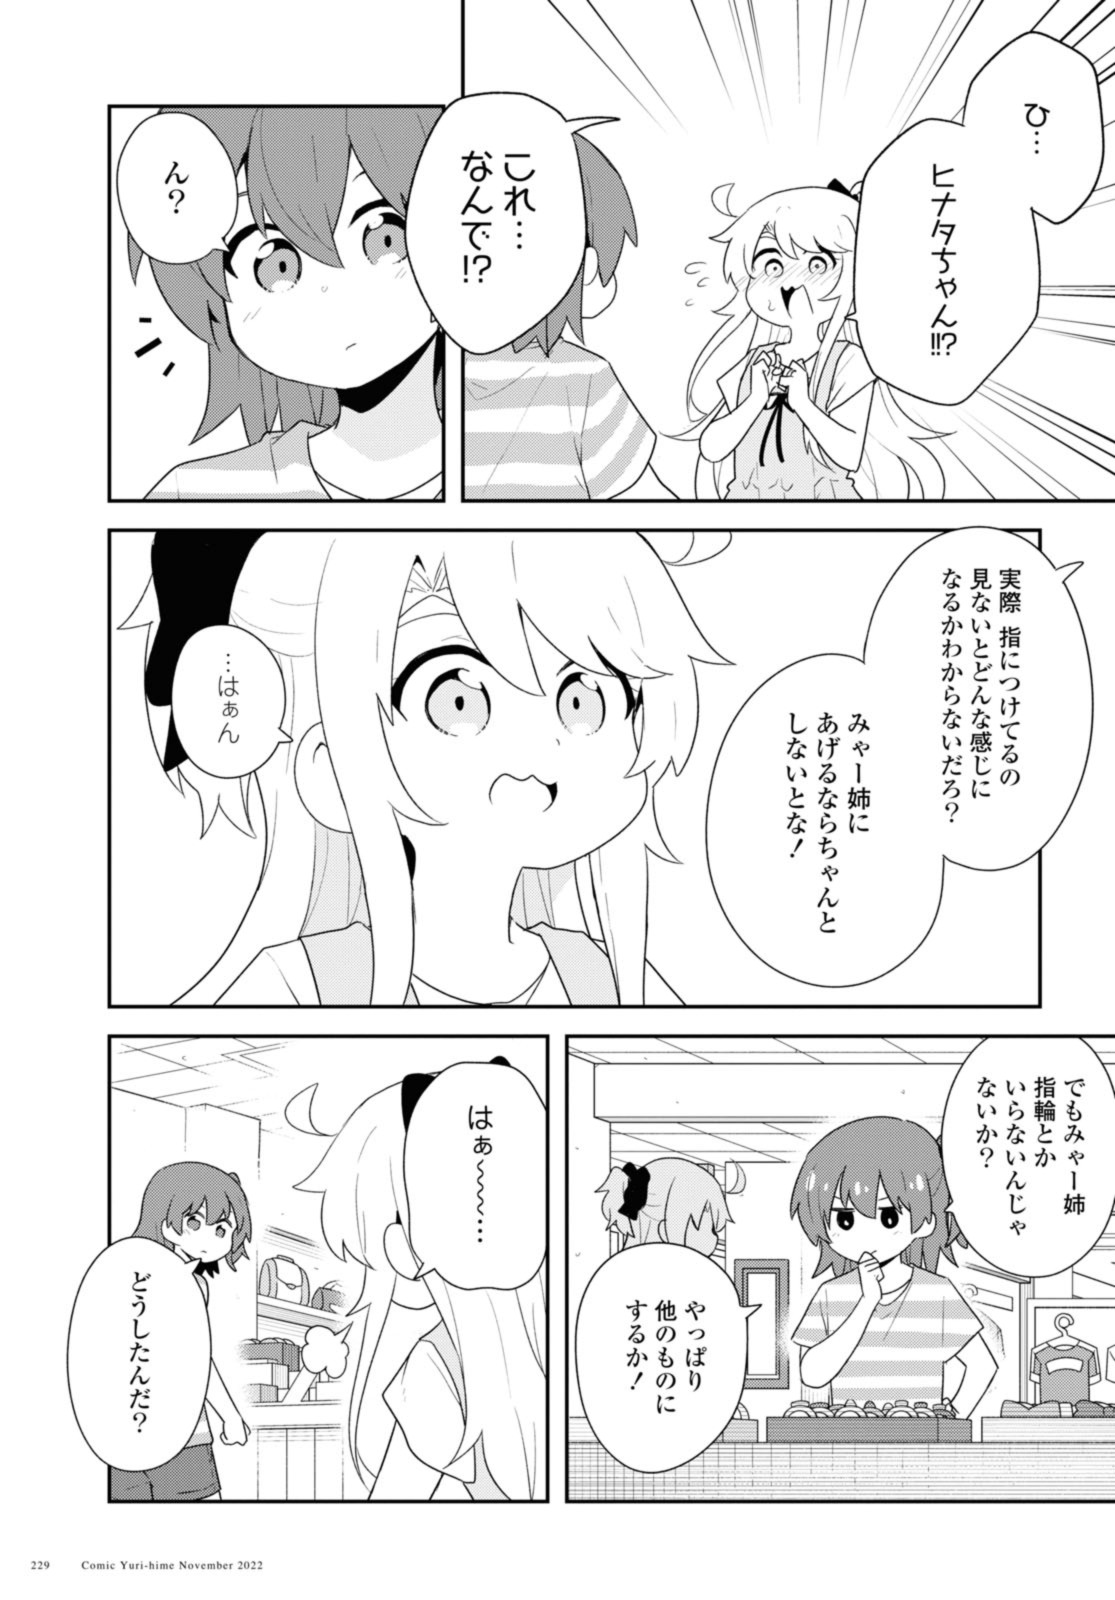 Watashi ni Tenshi ga Maiorita! - Chapter 99 - Page 17